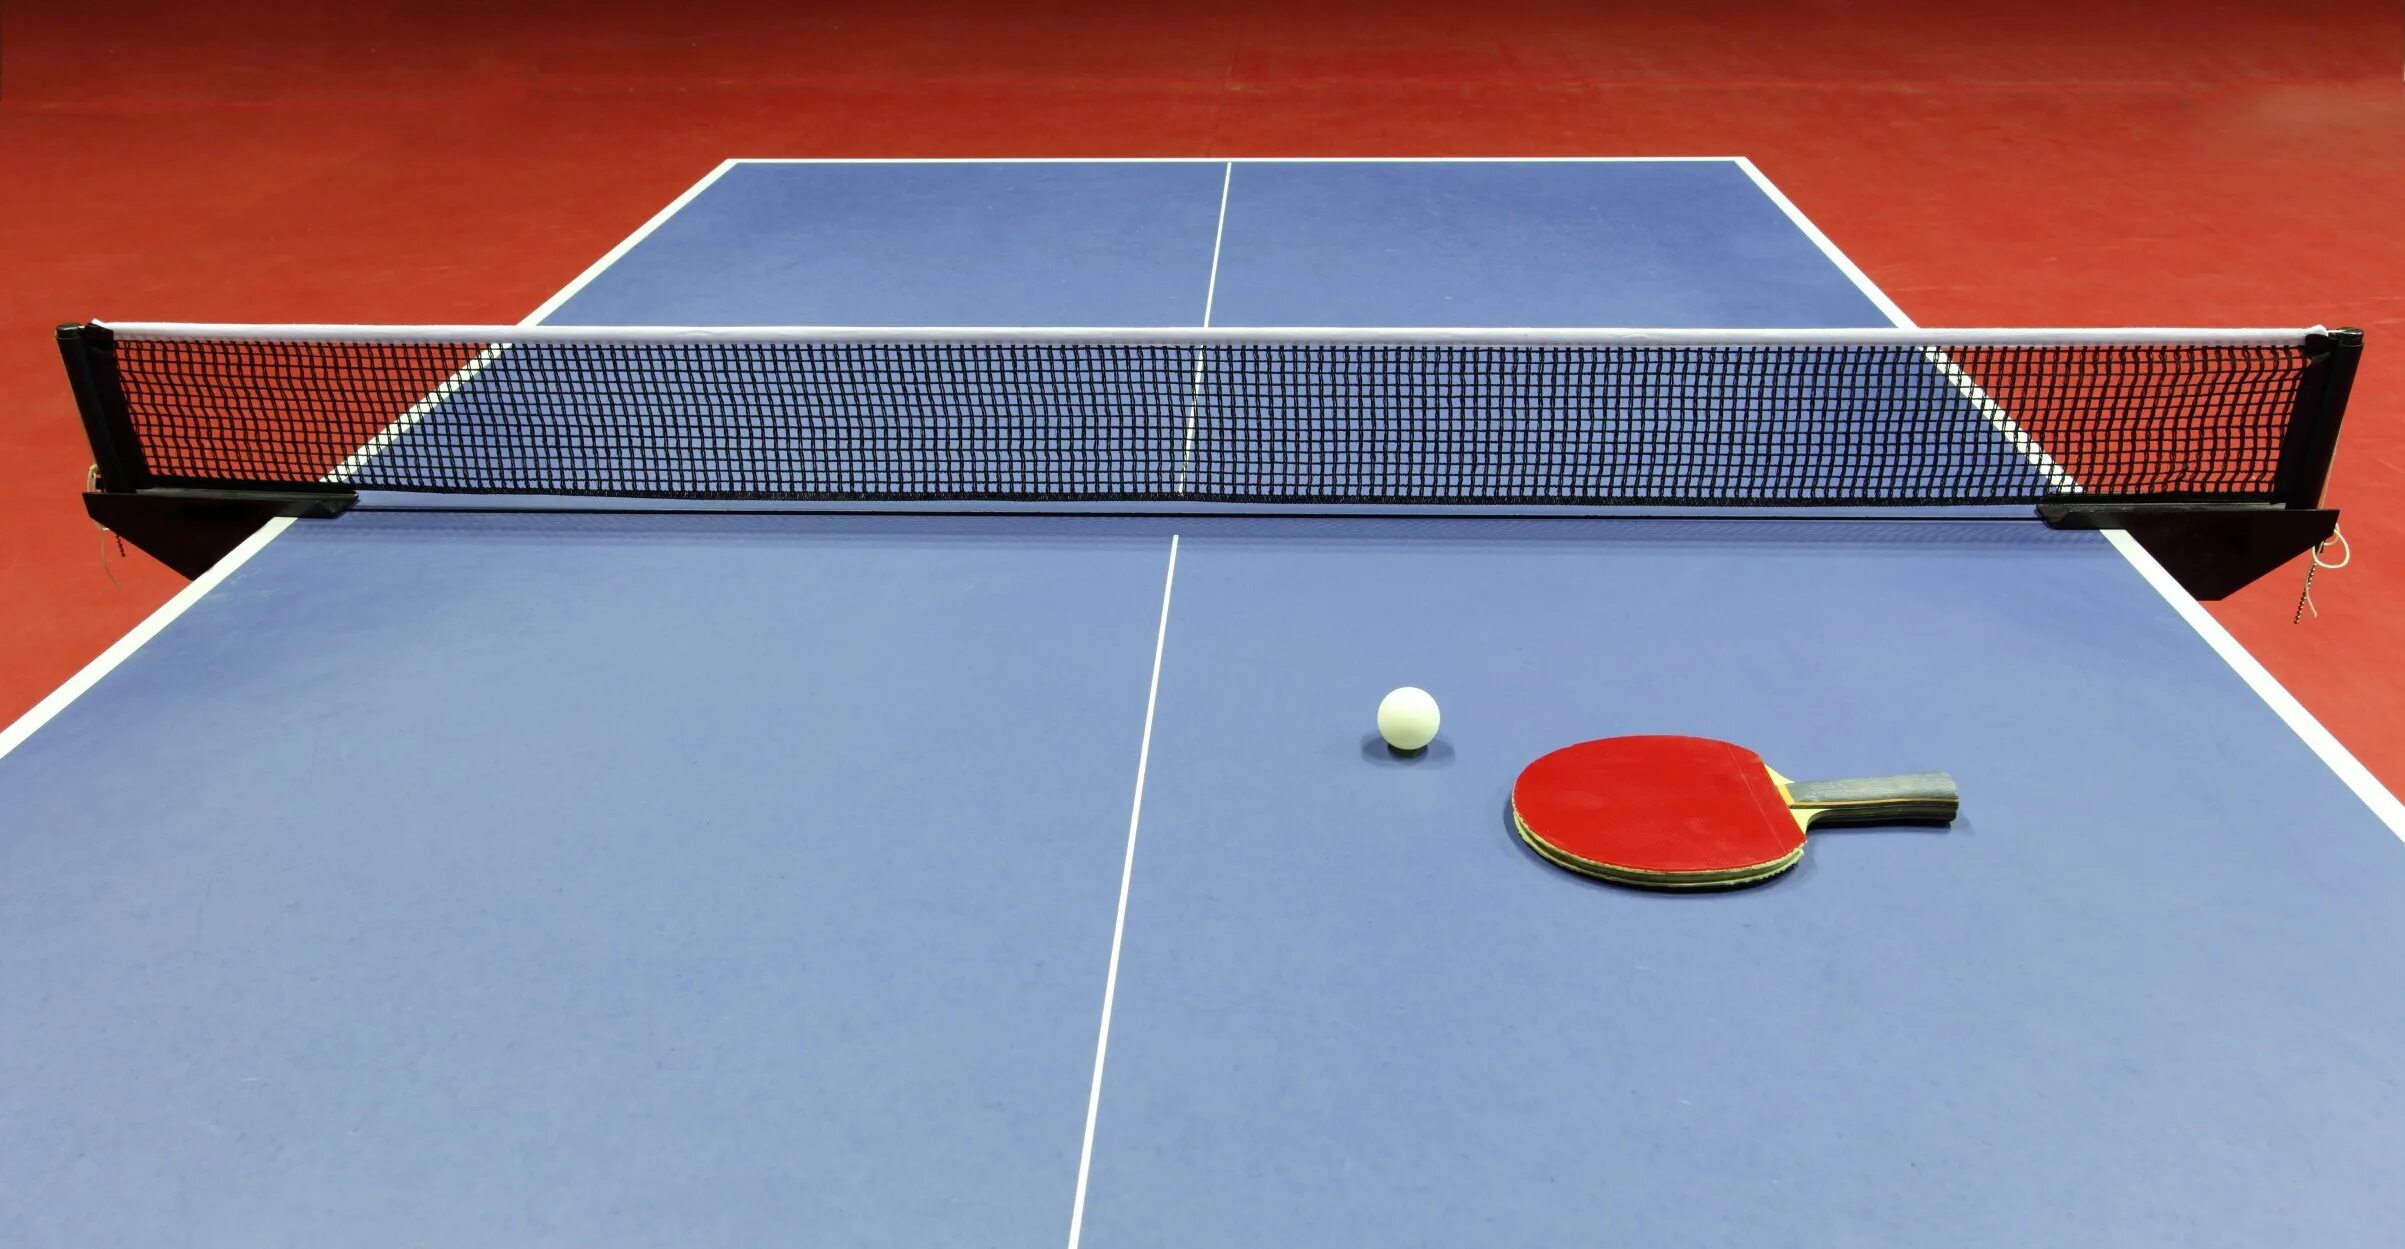 Настольный теннис (стол т1223). Stol Tennis” “Ping-Pong”. Пинпонг и настольный теннис. Теннисный стол пинг понг.